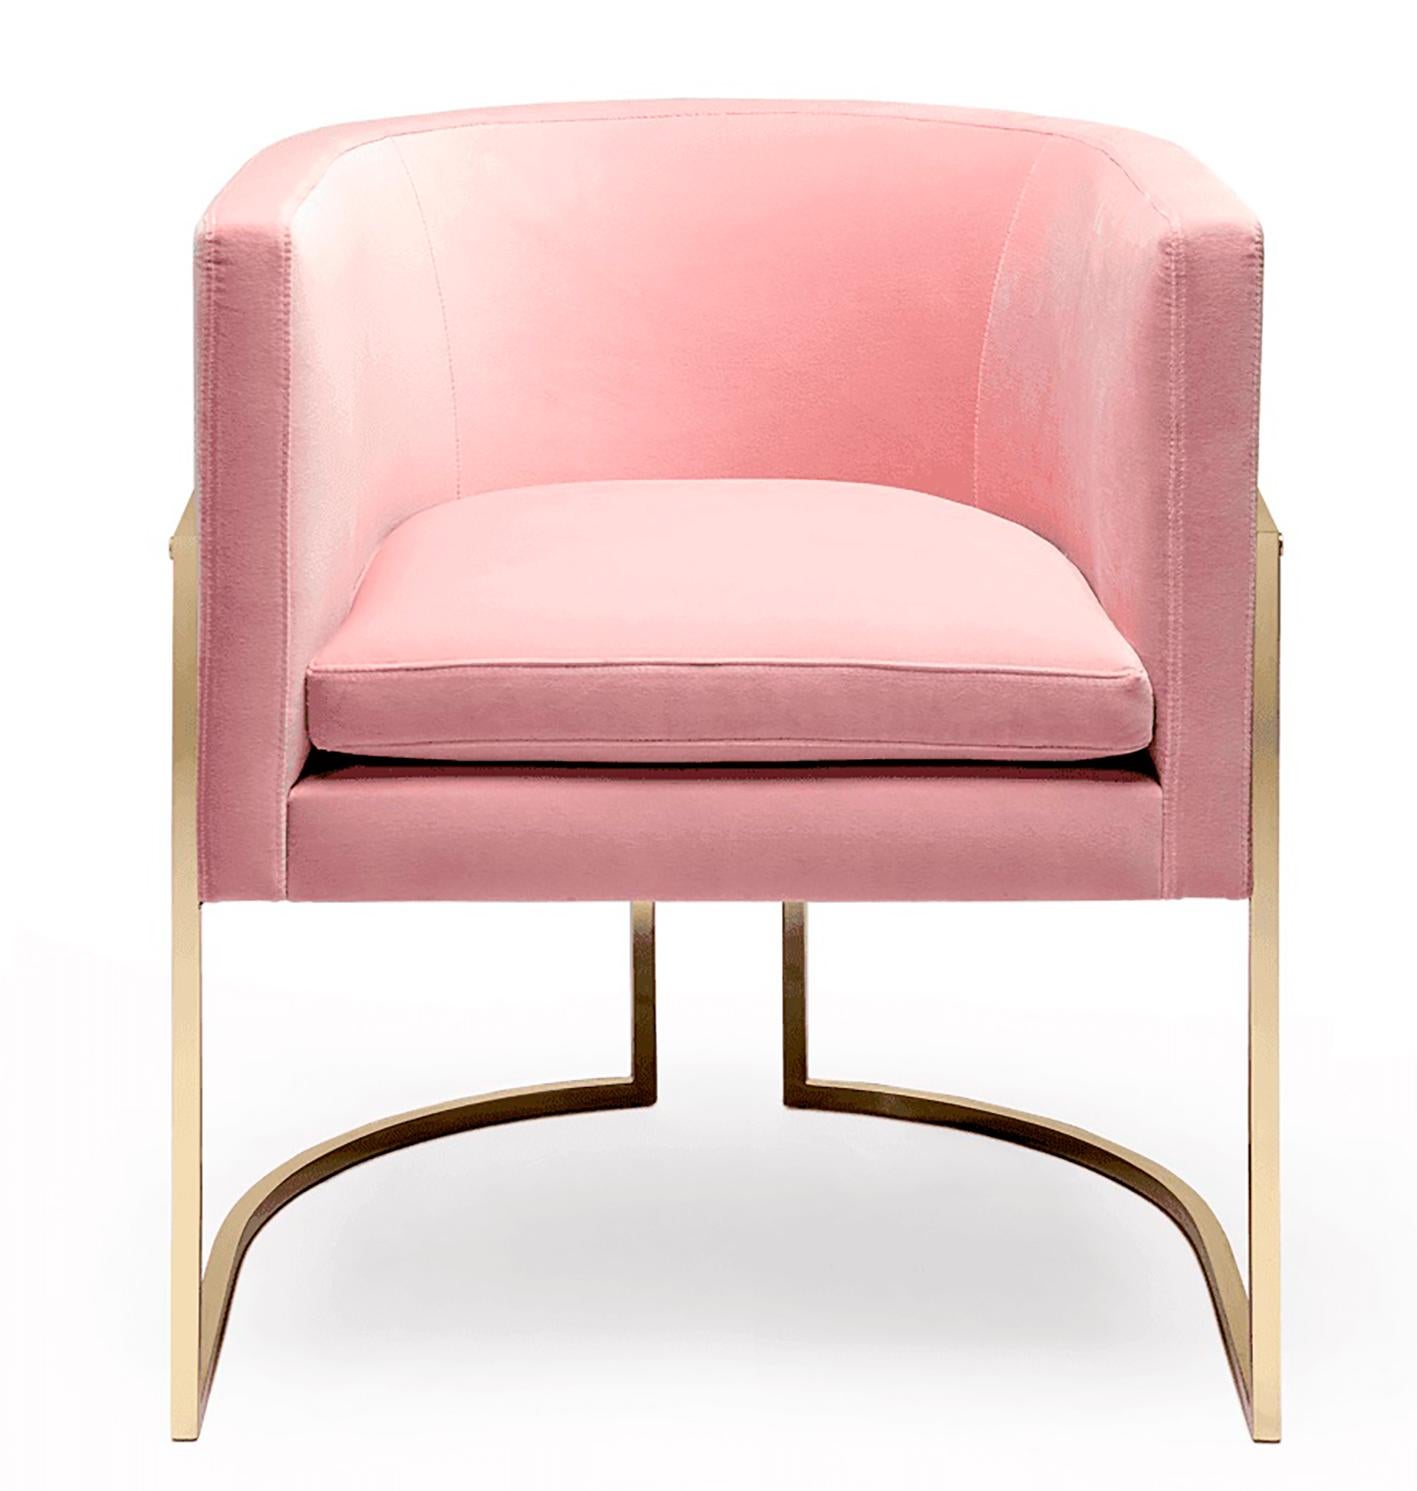 Der aktuelle Trend zu Art-Déco-Möbeln in Verbindung mit der Liebe zum Samt in der Inneneinrichtung macht diesen Stuhl zu einem der begehrtesten Stücke in unserer Kollektion.

Perfekt für einen glamourösen Essbereich oder als Statement-Bürostuhl.